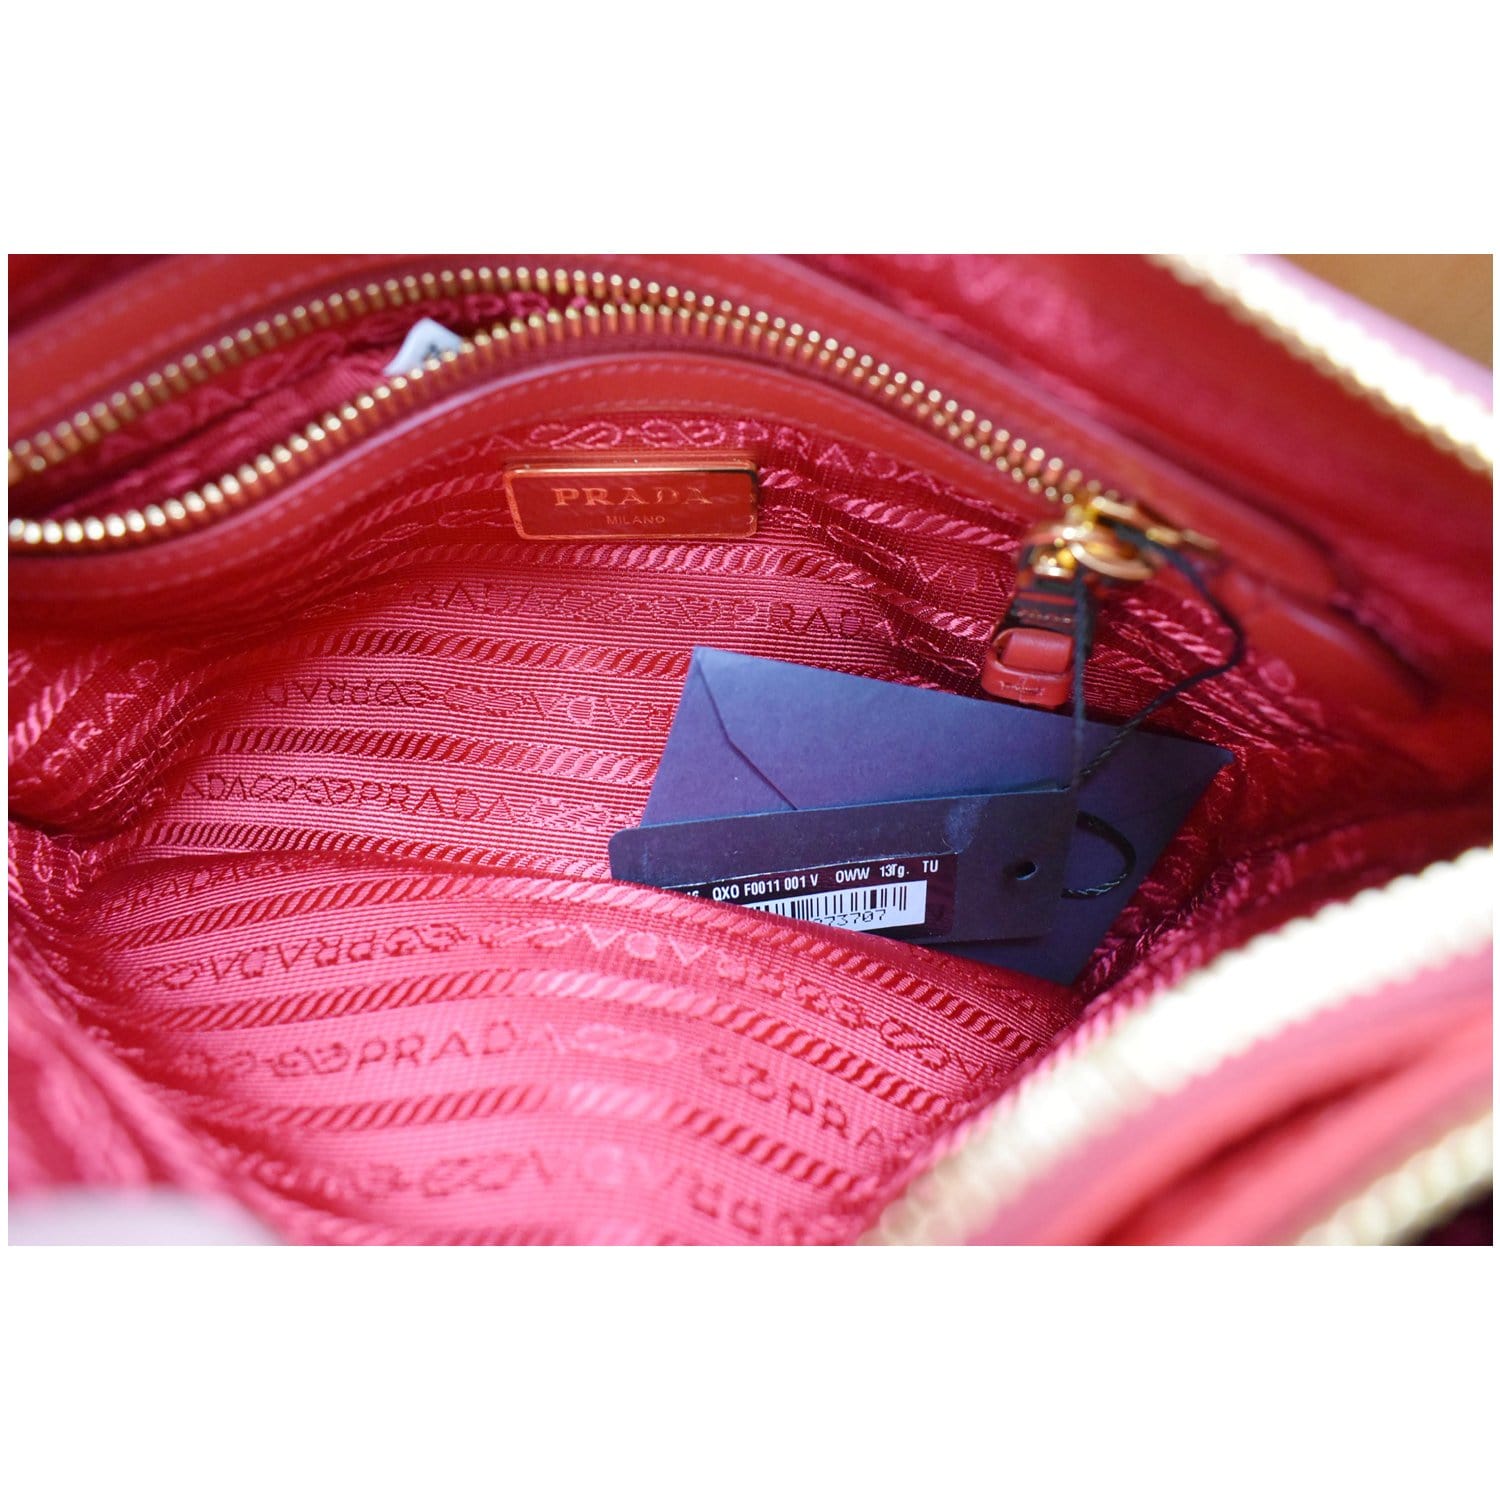 New Prada 1BH046 Red Tessuto Nylon Bandoliera Double Zip Crossbody Bag –  Annie's Unique Accessories